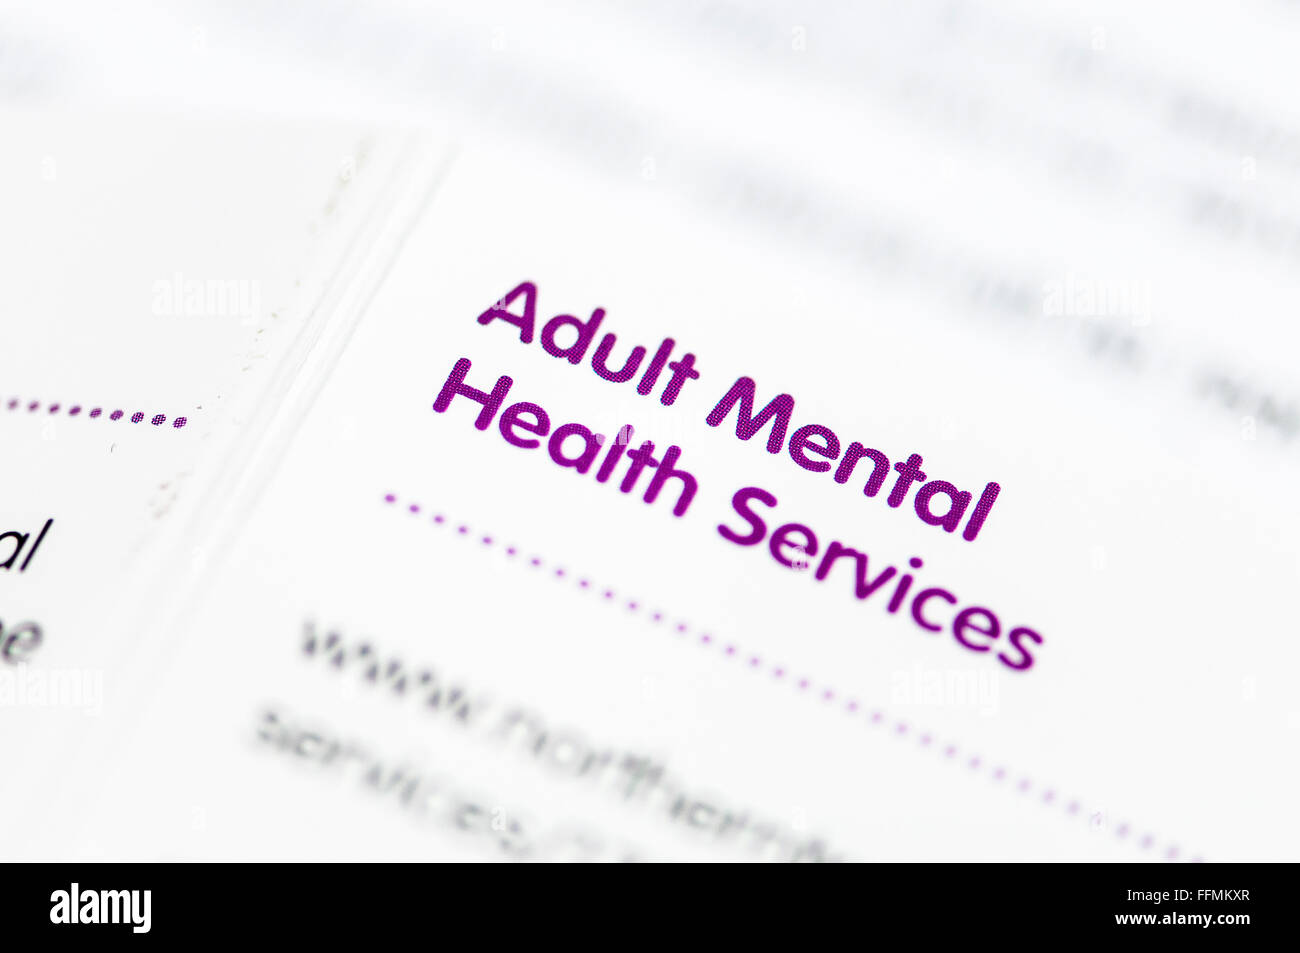 Directorio de Servicios de Salud Mental para Adultos para Irlanda del Norte. Foto de stock